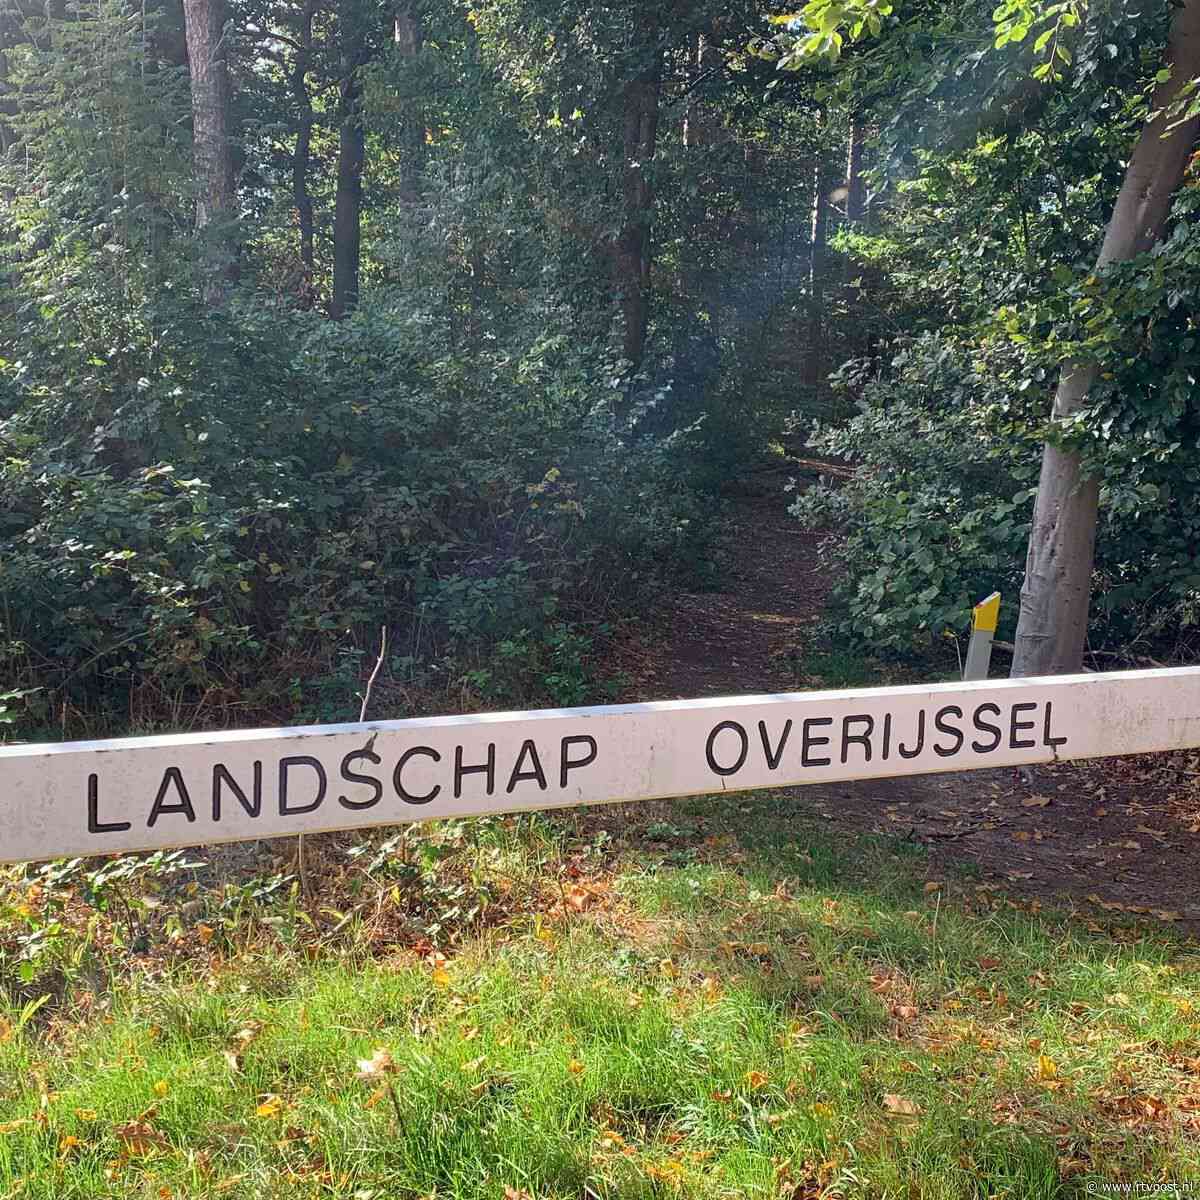 Landschap Overijssel stoort zich aan dumpen van tuinafval in de natuur